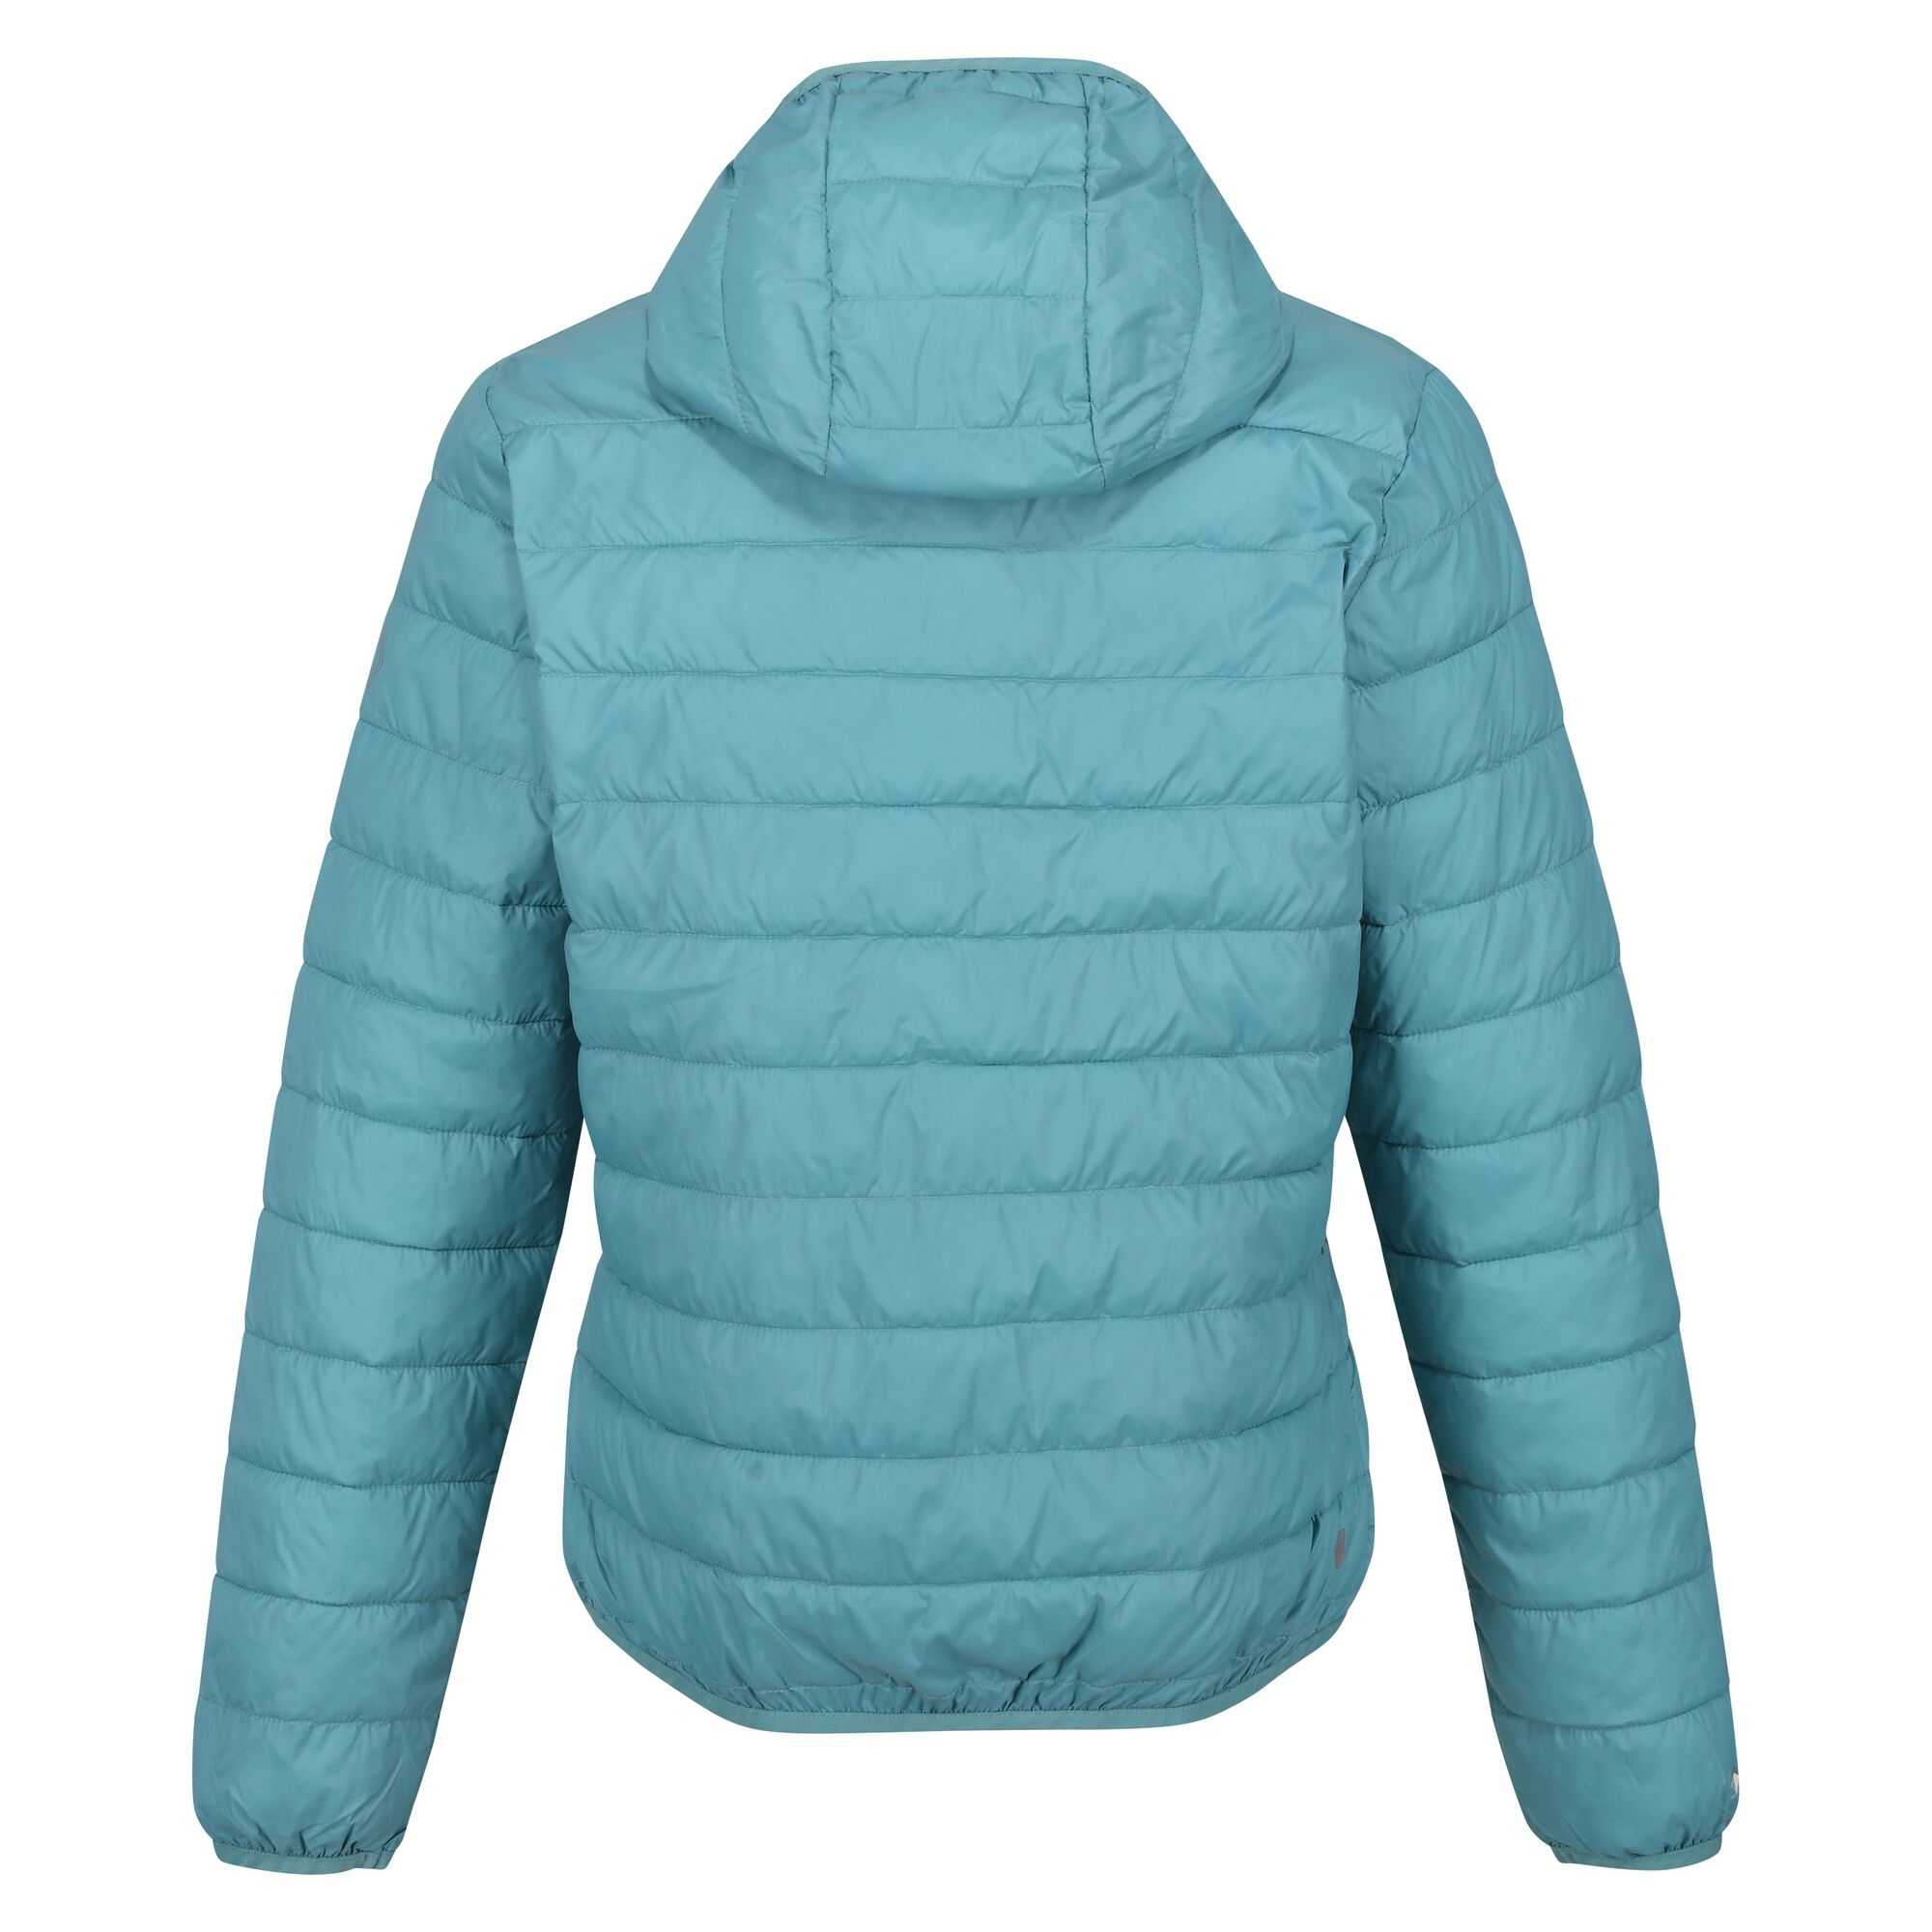 Women's Hooded Lightweight Outdoor Puffer Jacket |Winter